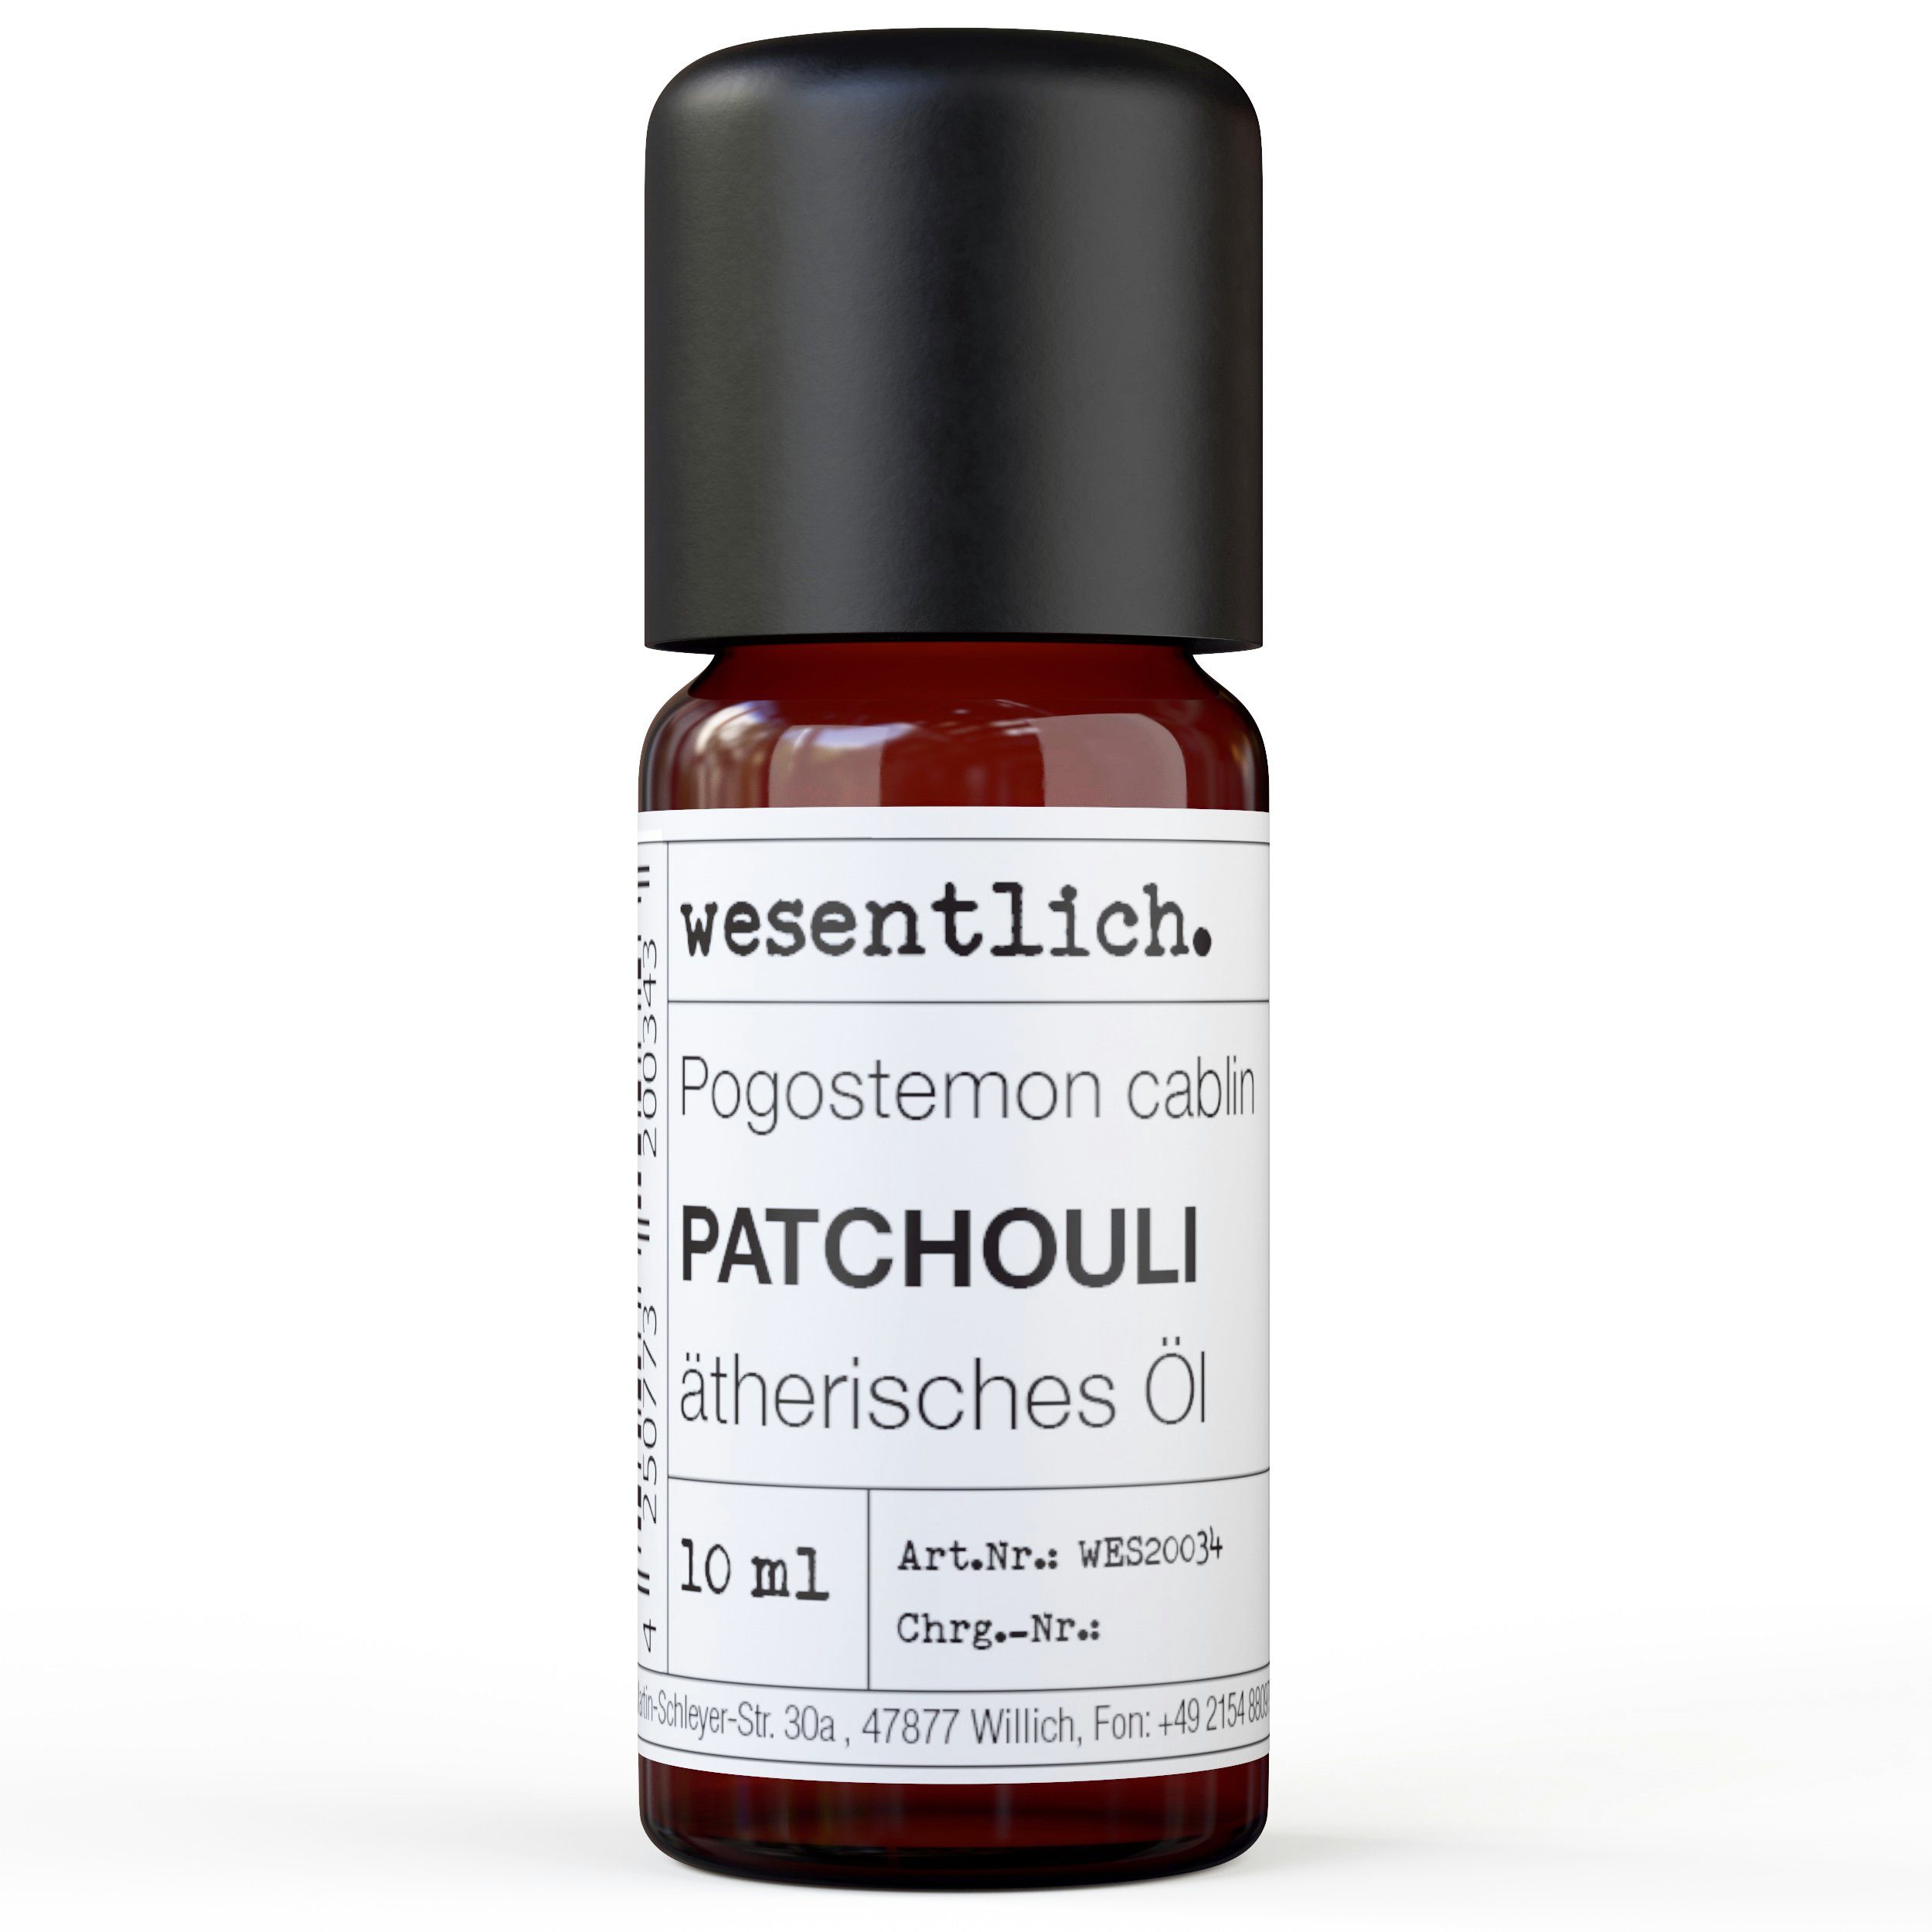 Duftlampe ätherisches Öl Patchouli - 10ml wesentlich.